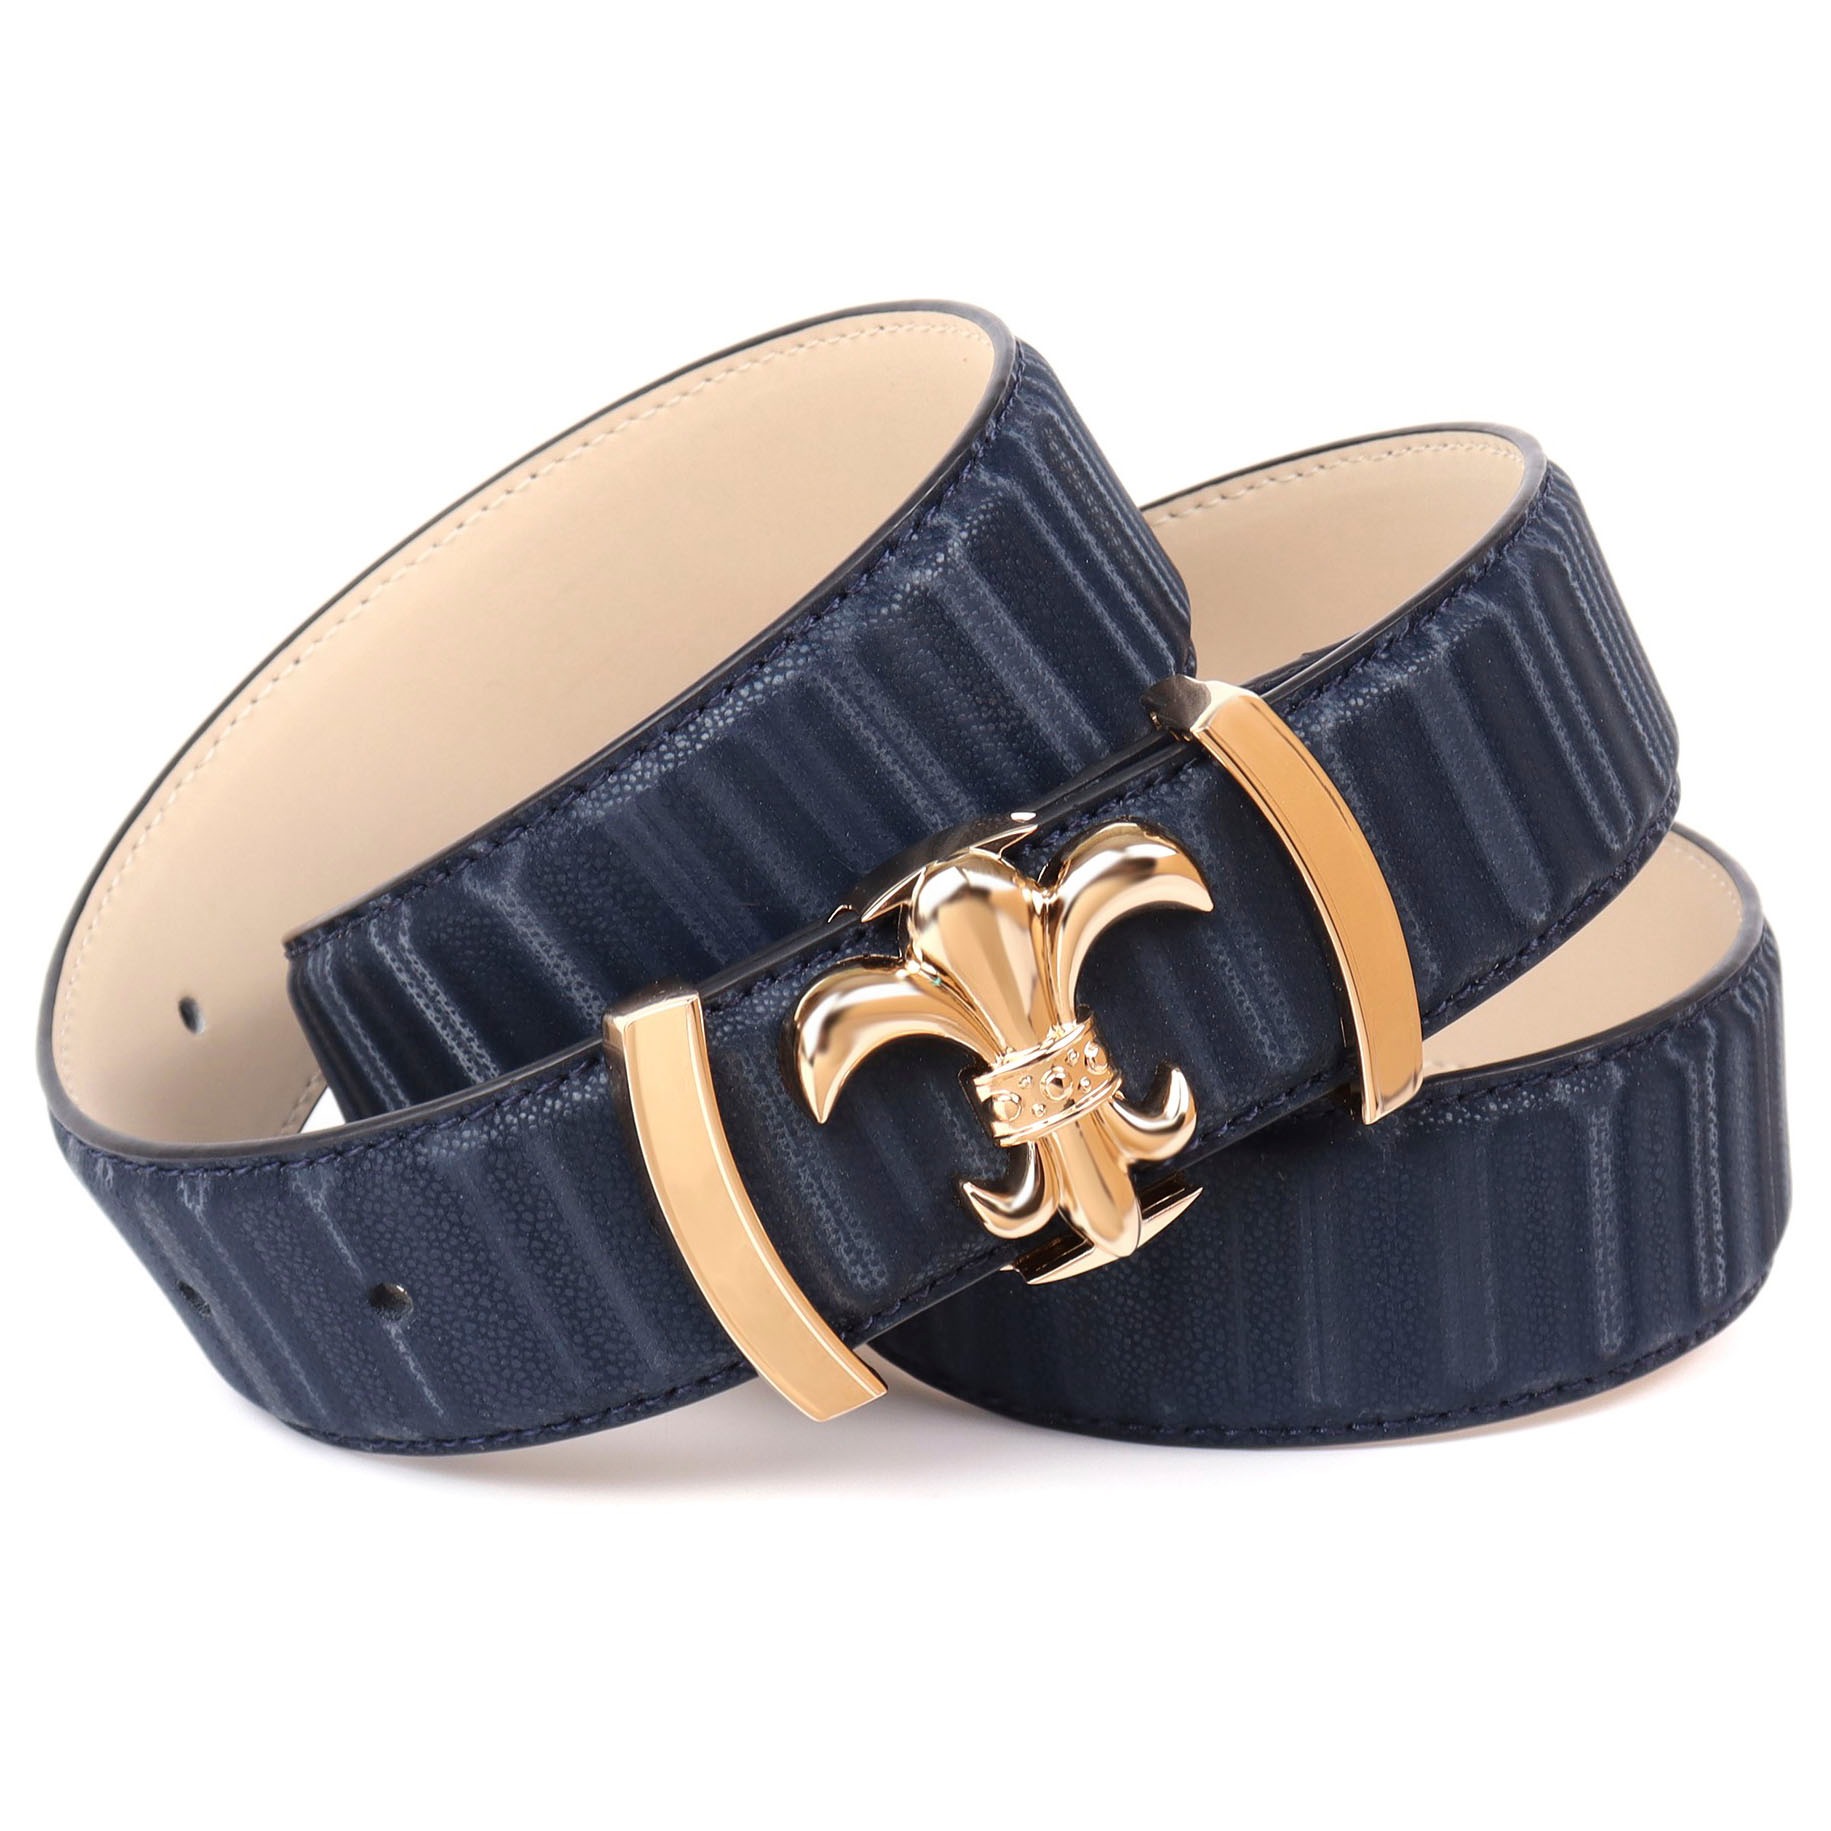 Anthoni Crown Ledergürtel, mit filigraner goldfarbener Koppel-Schließe  jetzt bestellen | Anzuggürtel